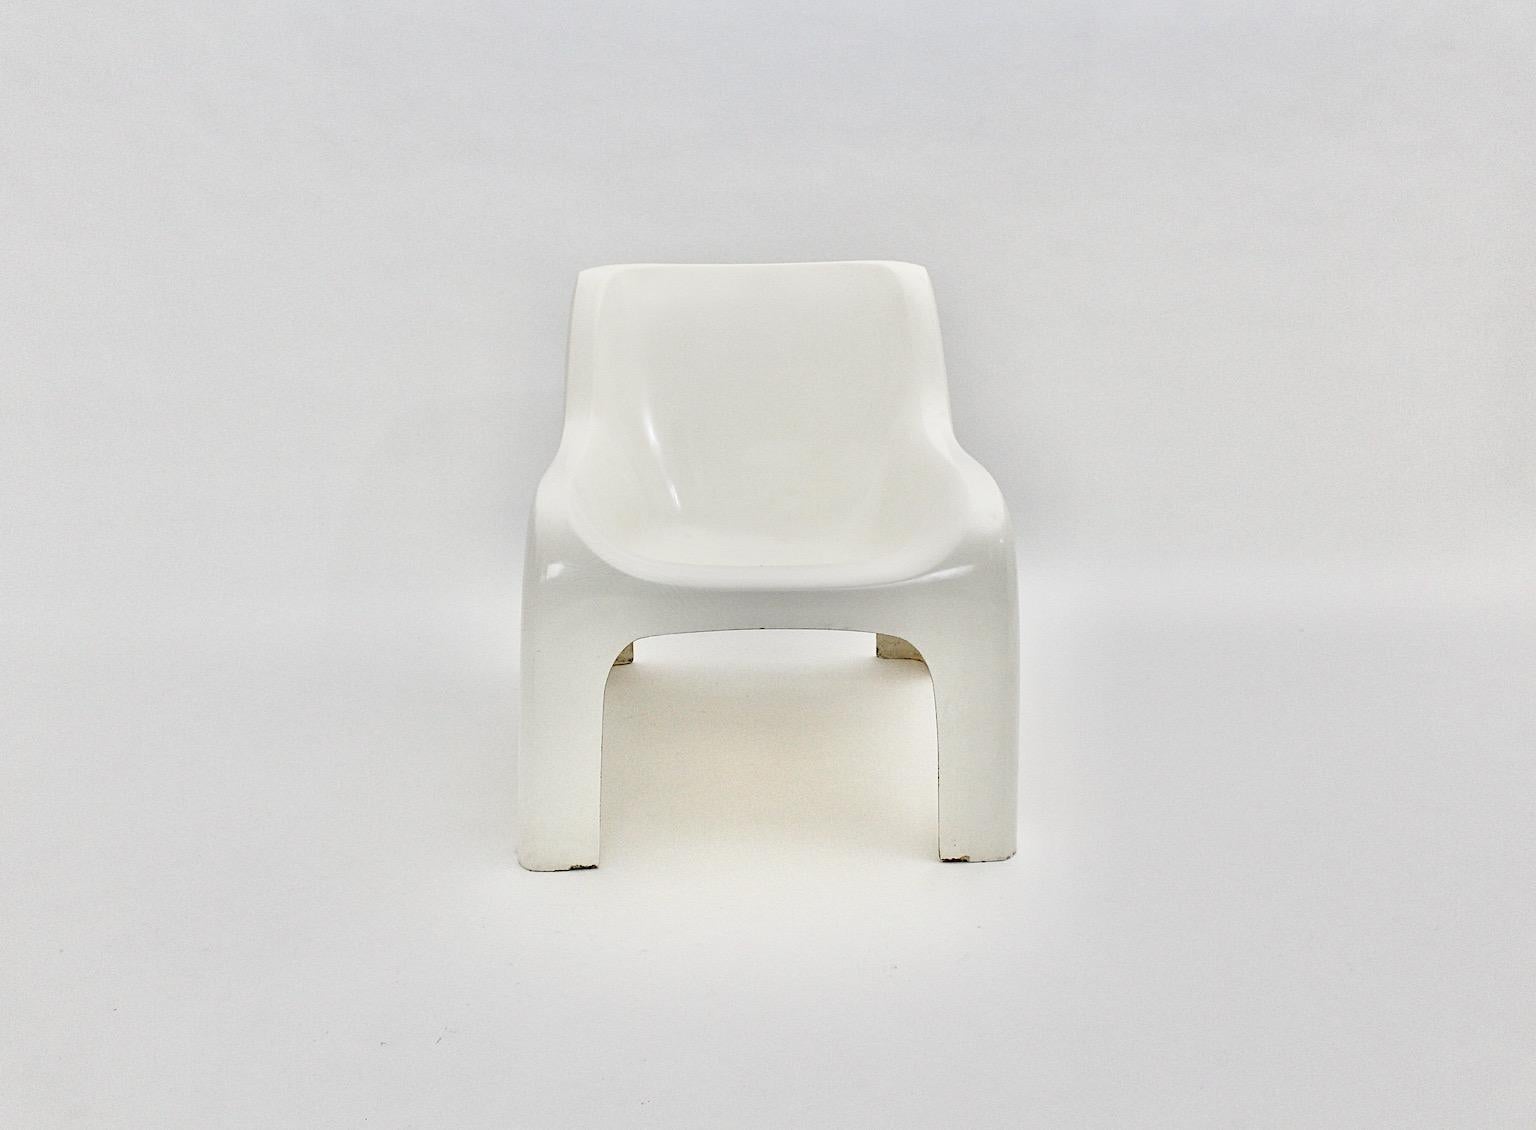 Chaise longue vintage de l'âge de l'espace, modèle Anatomia, en plastique blanc, réalisée par Ahti Kotikoski pour Asko 1968, Finlande.
Une magnifique chaise longue vintage de l'ère spatiale, dessinée par Ahti Kotikoski pour Asko, Finlande. 
Famed a